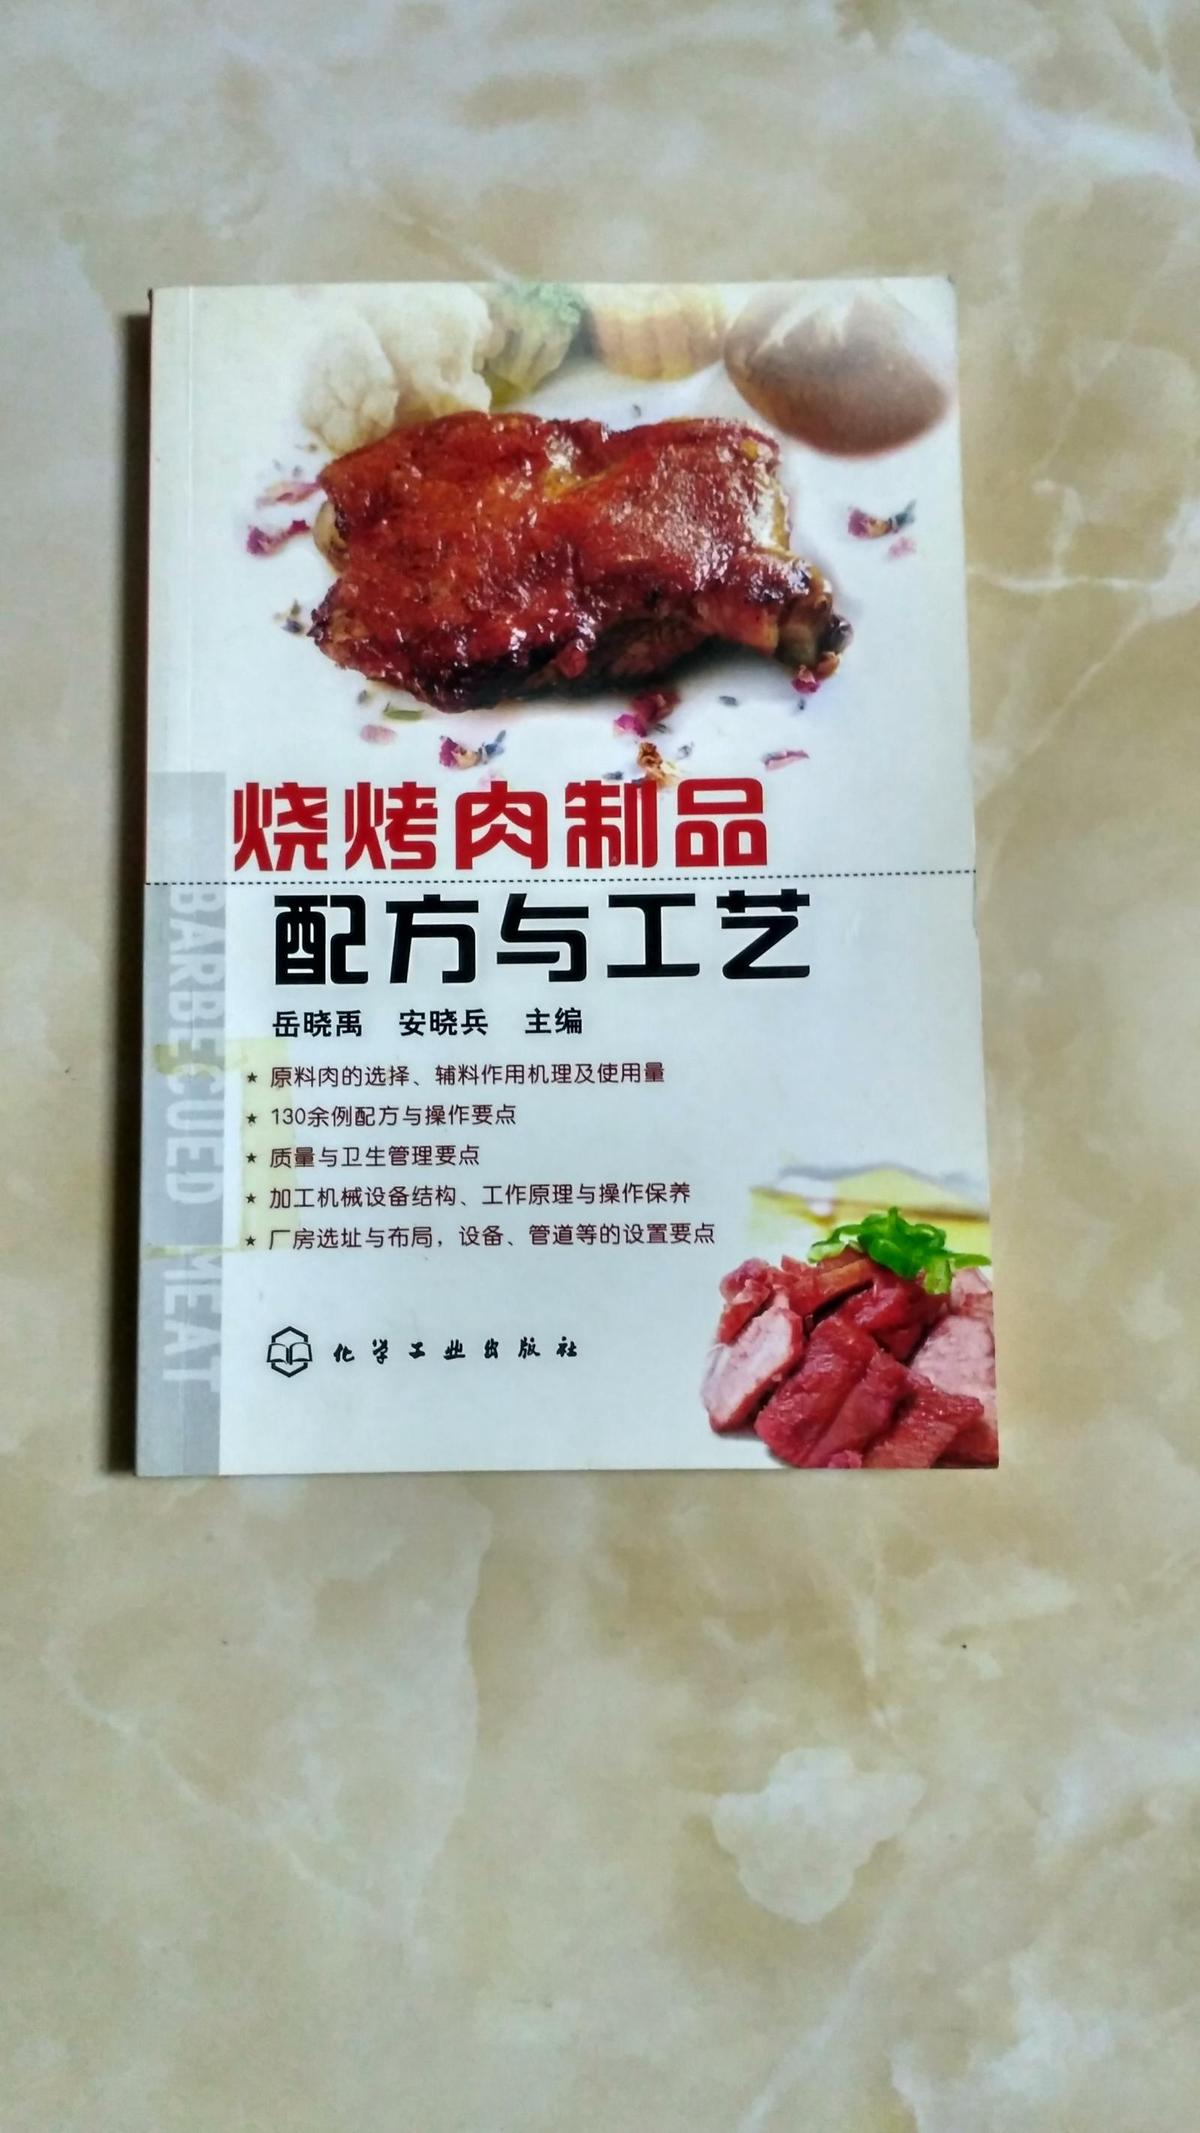 烧烤肉制品配方与工艺 17.1